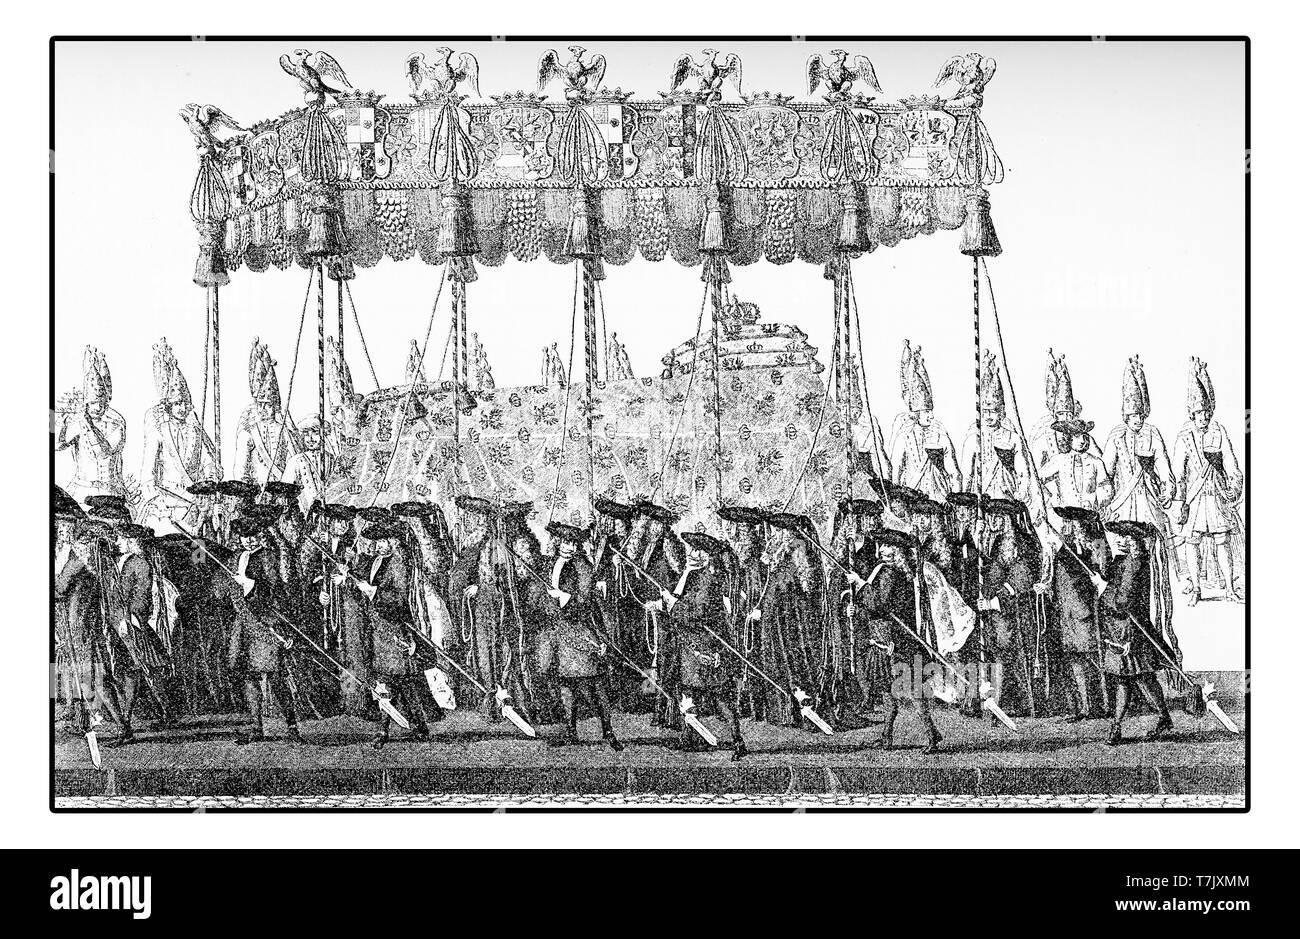 La procesión fúnebre por la muerte de Federico Guillermo I de Prusia 1740 el rey 'soldier'; un hombre frugal y austero estilo de vida mejoró Prusia económicamente y militarmente y promovido escuelas y hospitales Foto de stock